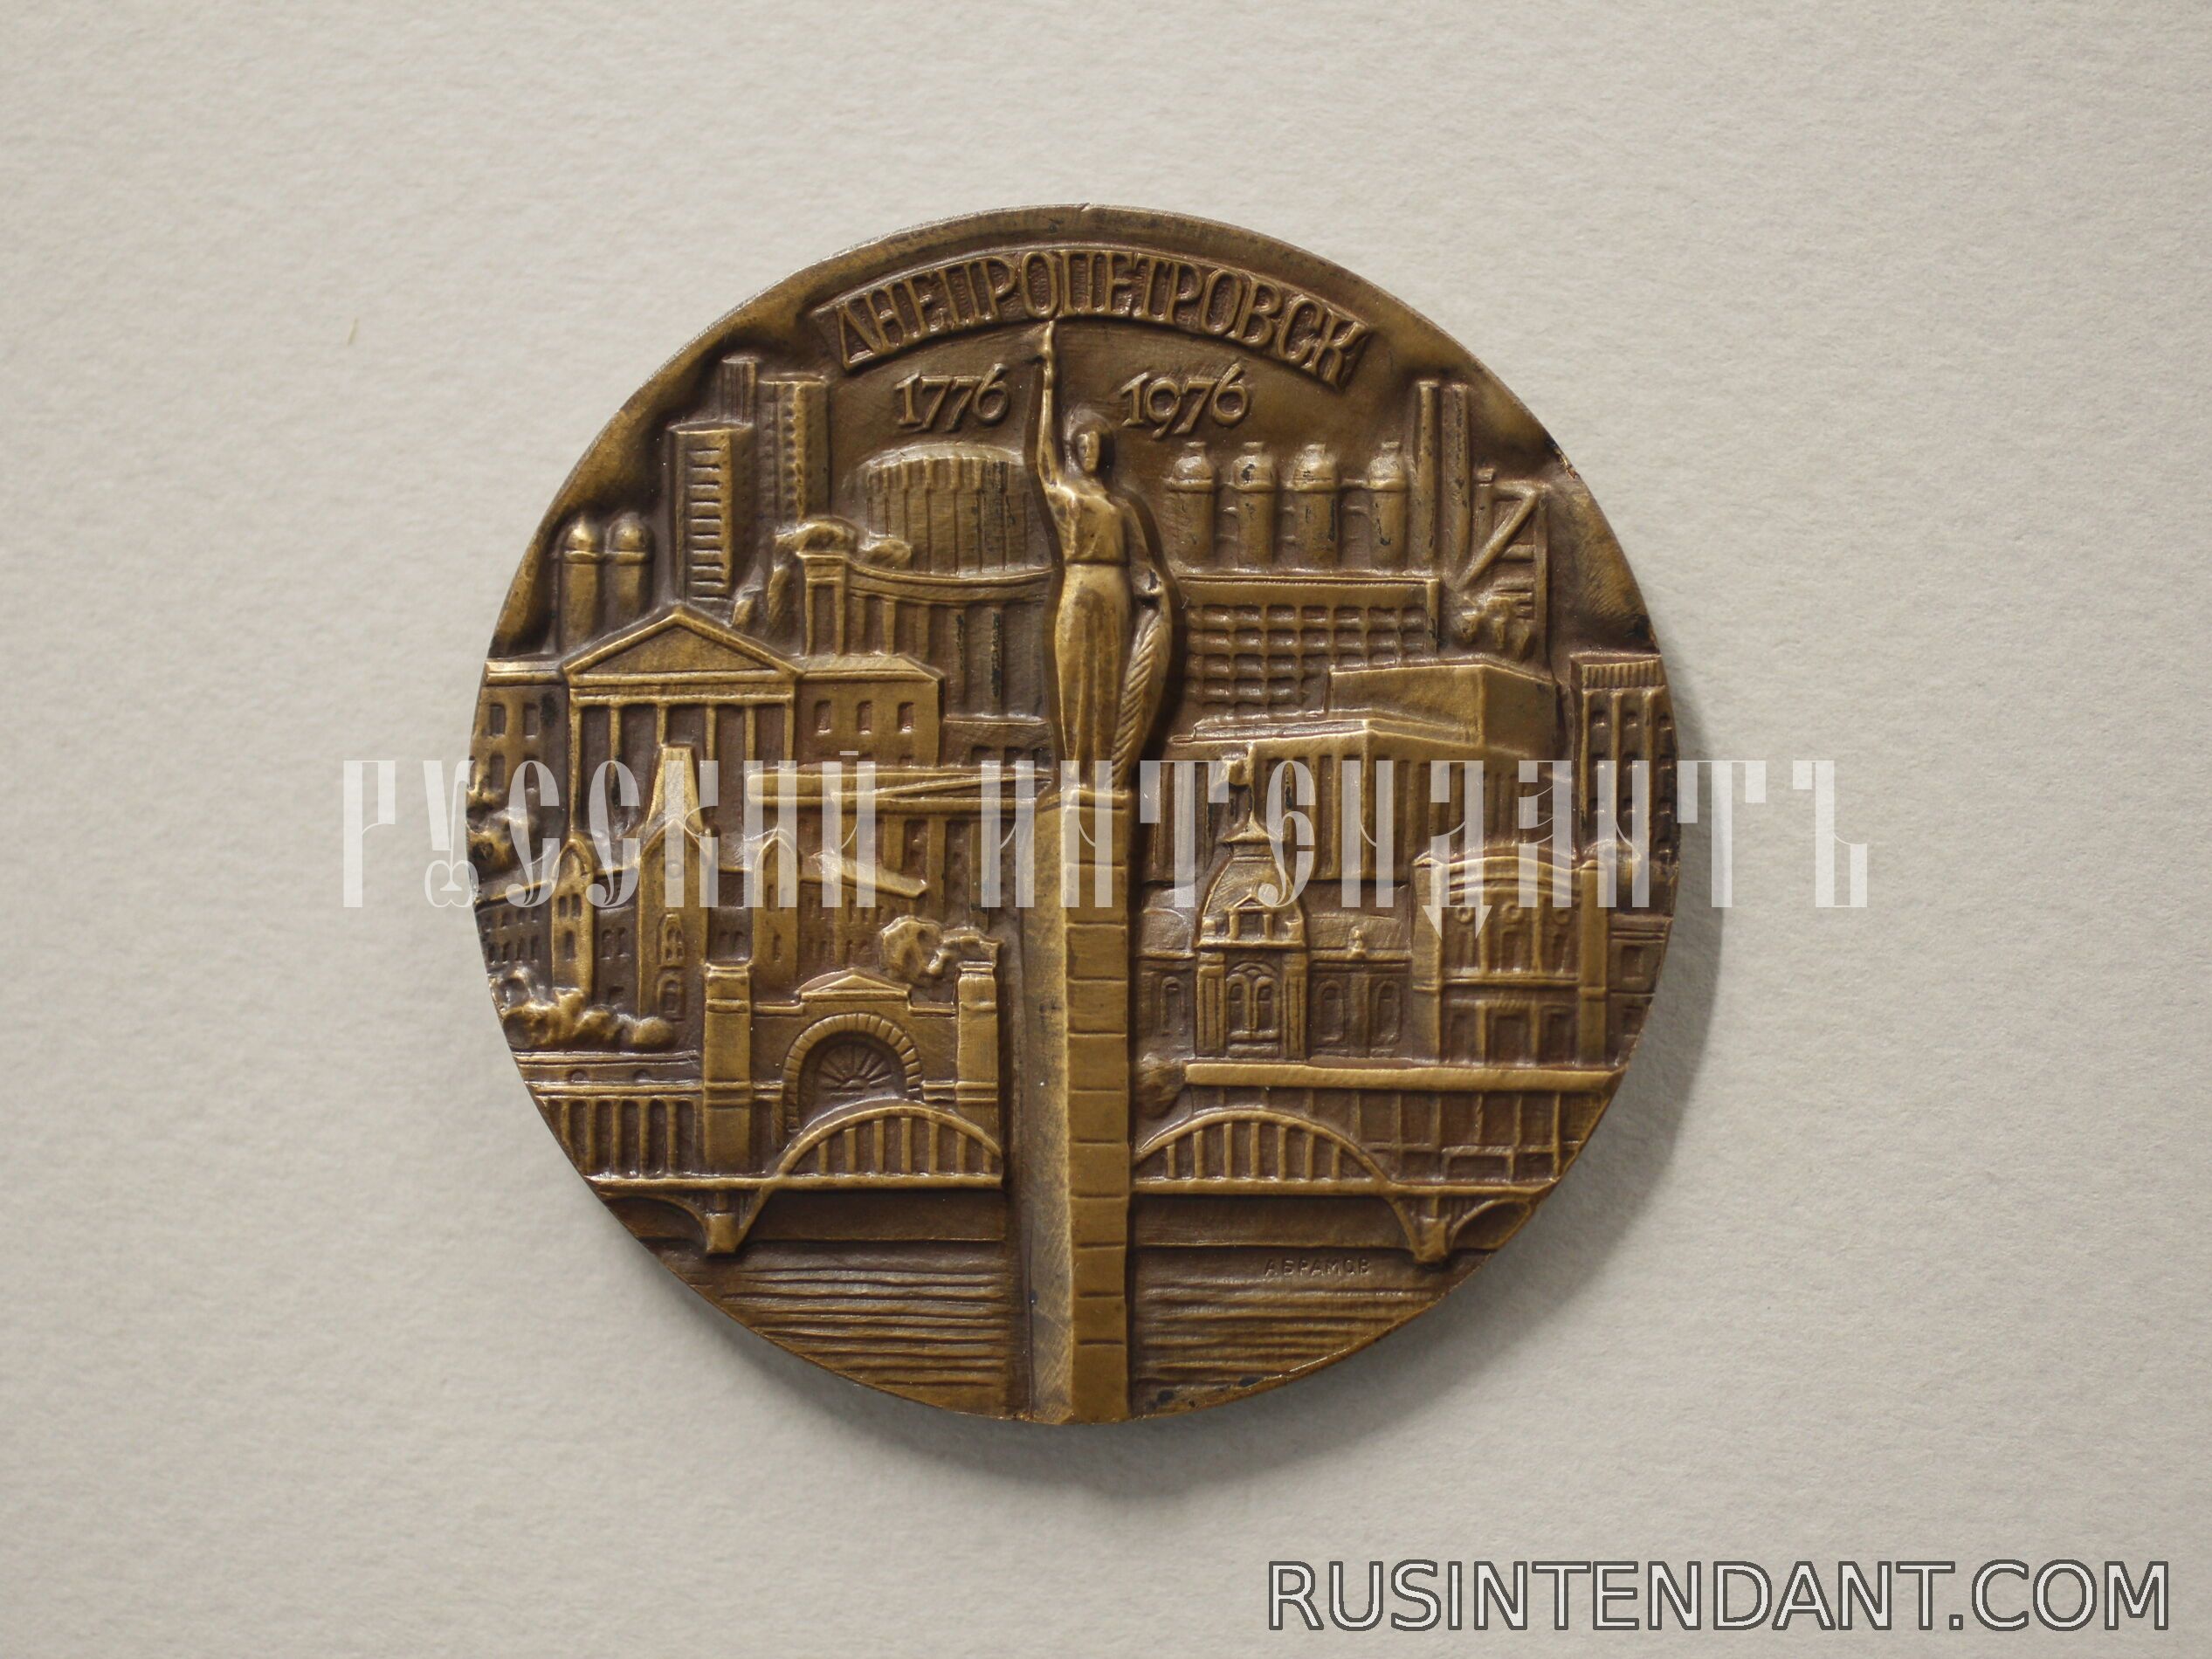 Фото 1: Настольная медаль «200 лет со дня основания Днепропетровска» 